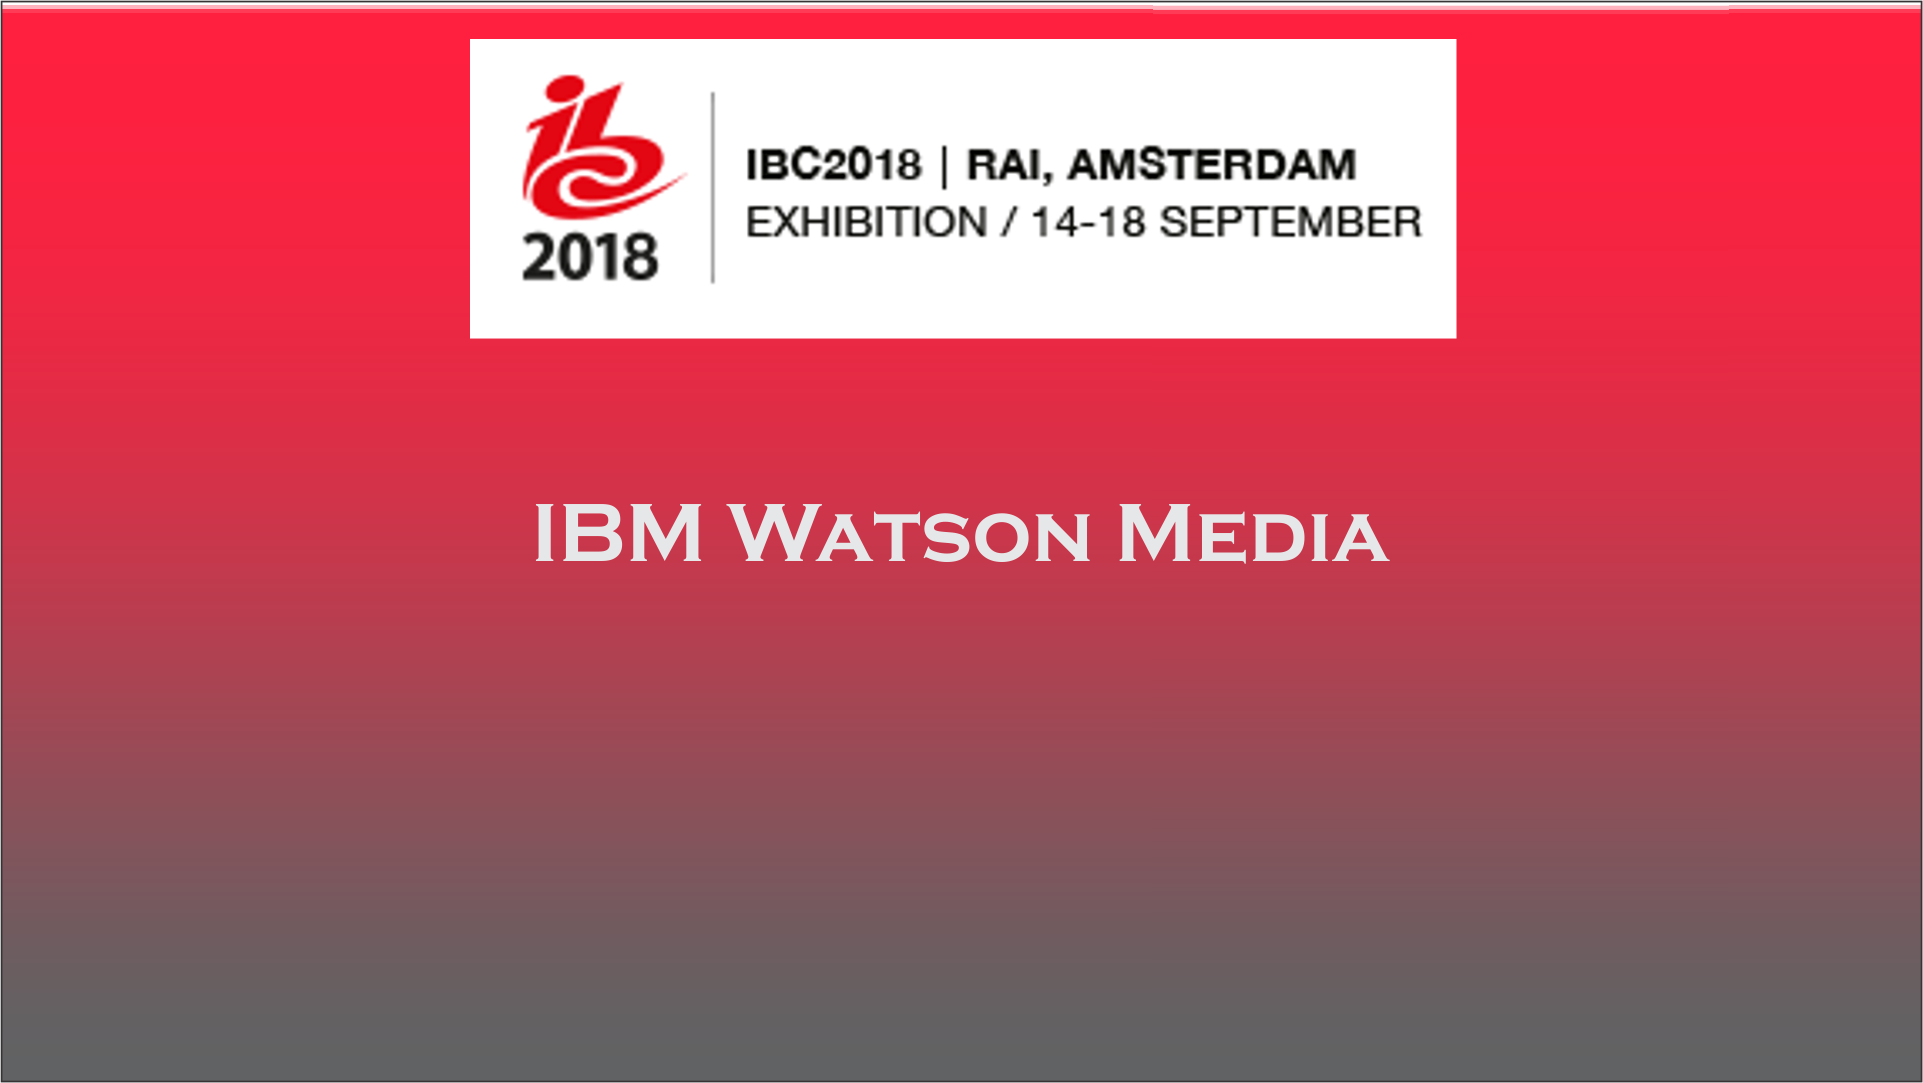 IBM Watson Media presents AI solution at IBC 2018